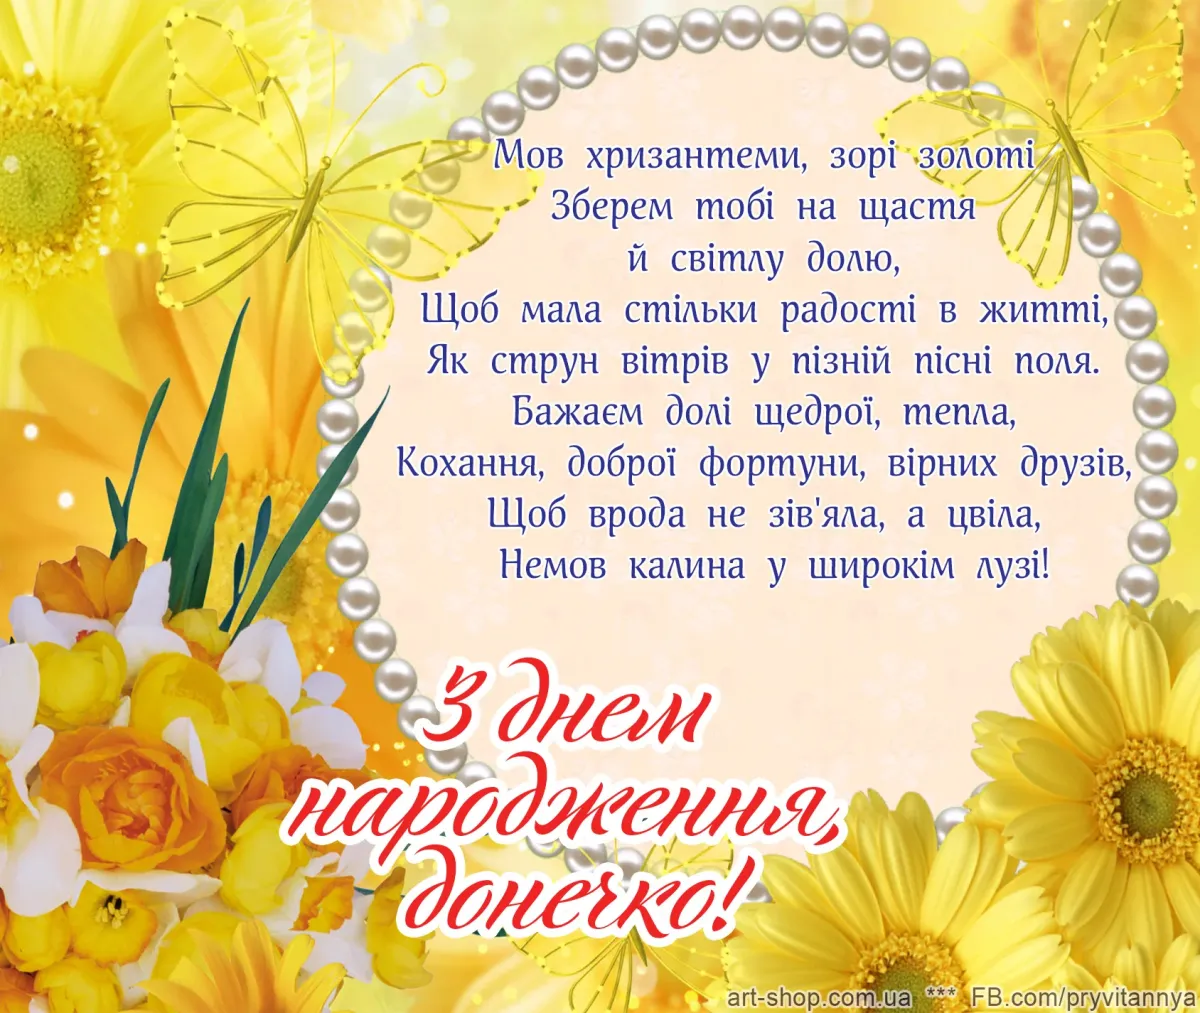 Привітання днем народження своїми словами. З днем народження. Вітаю з днем народження. Открытка с днем народження на украинском. Зднемнародженя.